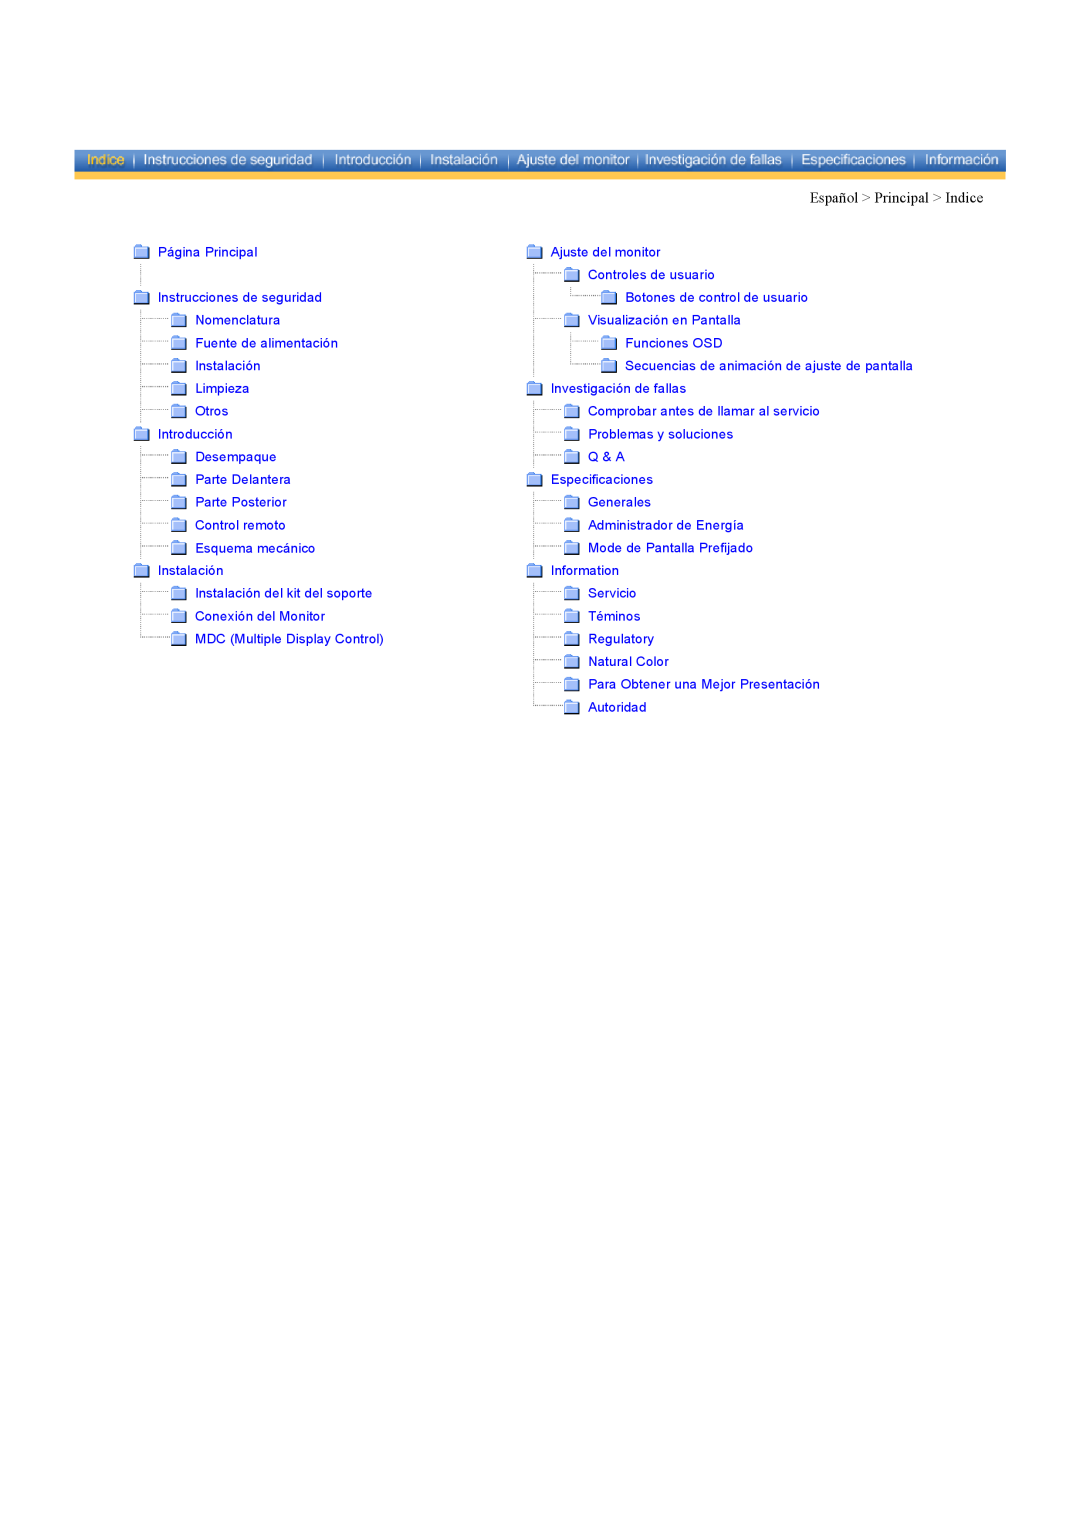 Samsung CK40BSNS/EDC Español Principal Indice, Página Principal, Ajuste del monitor, Controles de usuario, Nomenclatura 